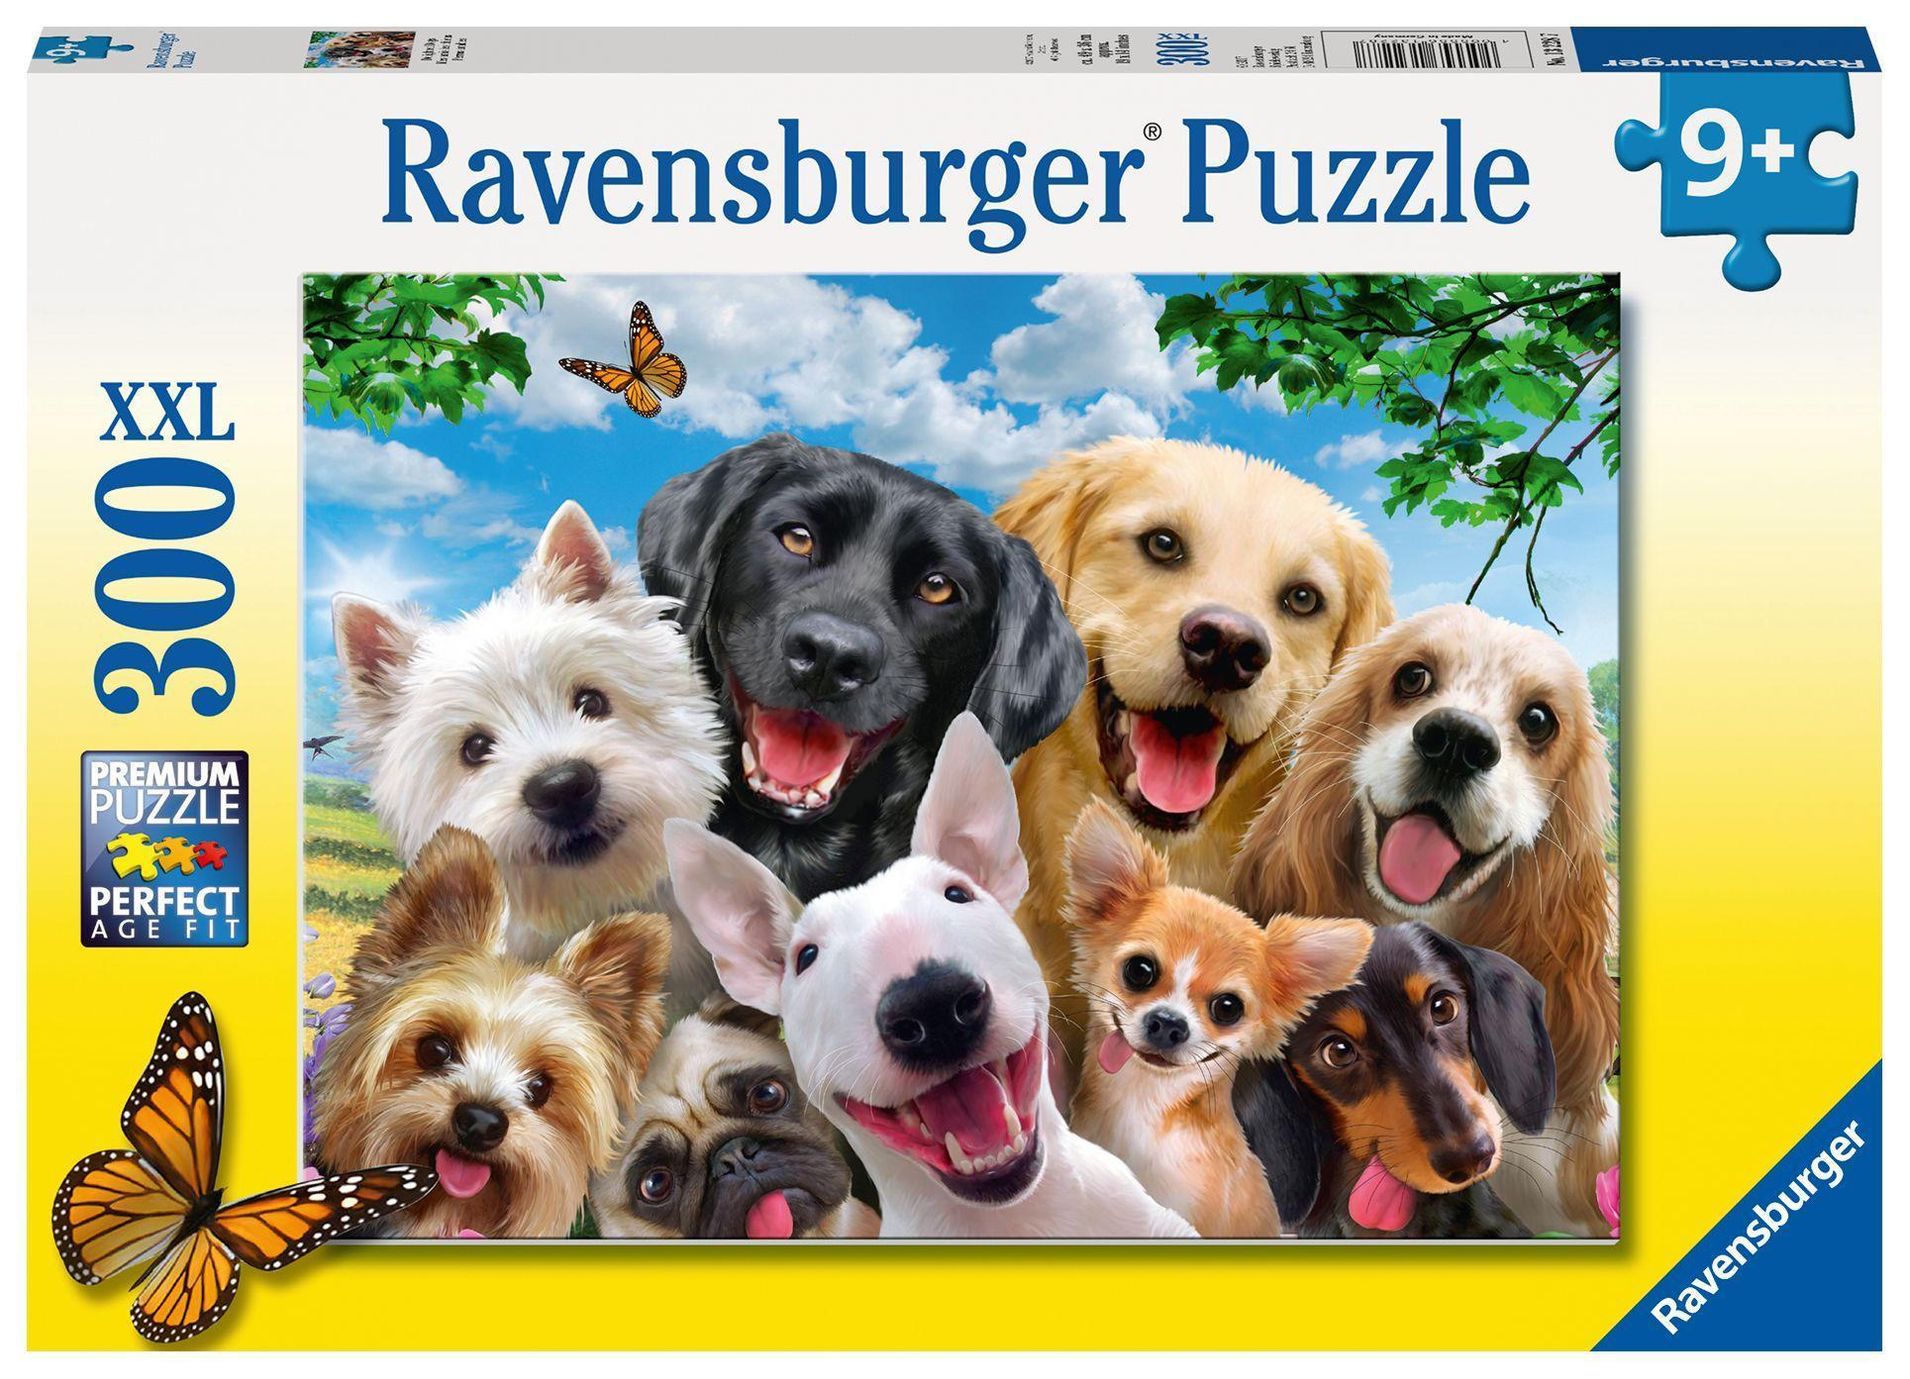 Ravensburger Kinderpuzzle - 13228 Delighted Dogs - Hunde-Puzzle für Kinder  ab 9 Jahren, mit 300 Teilen im XXL-Format | Weltbild.de